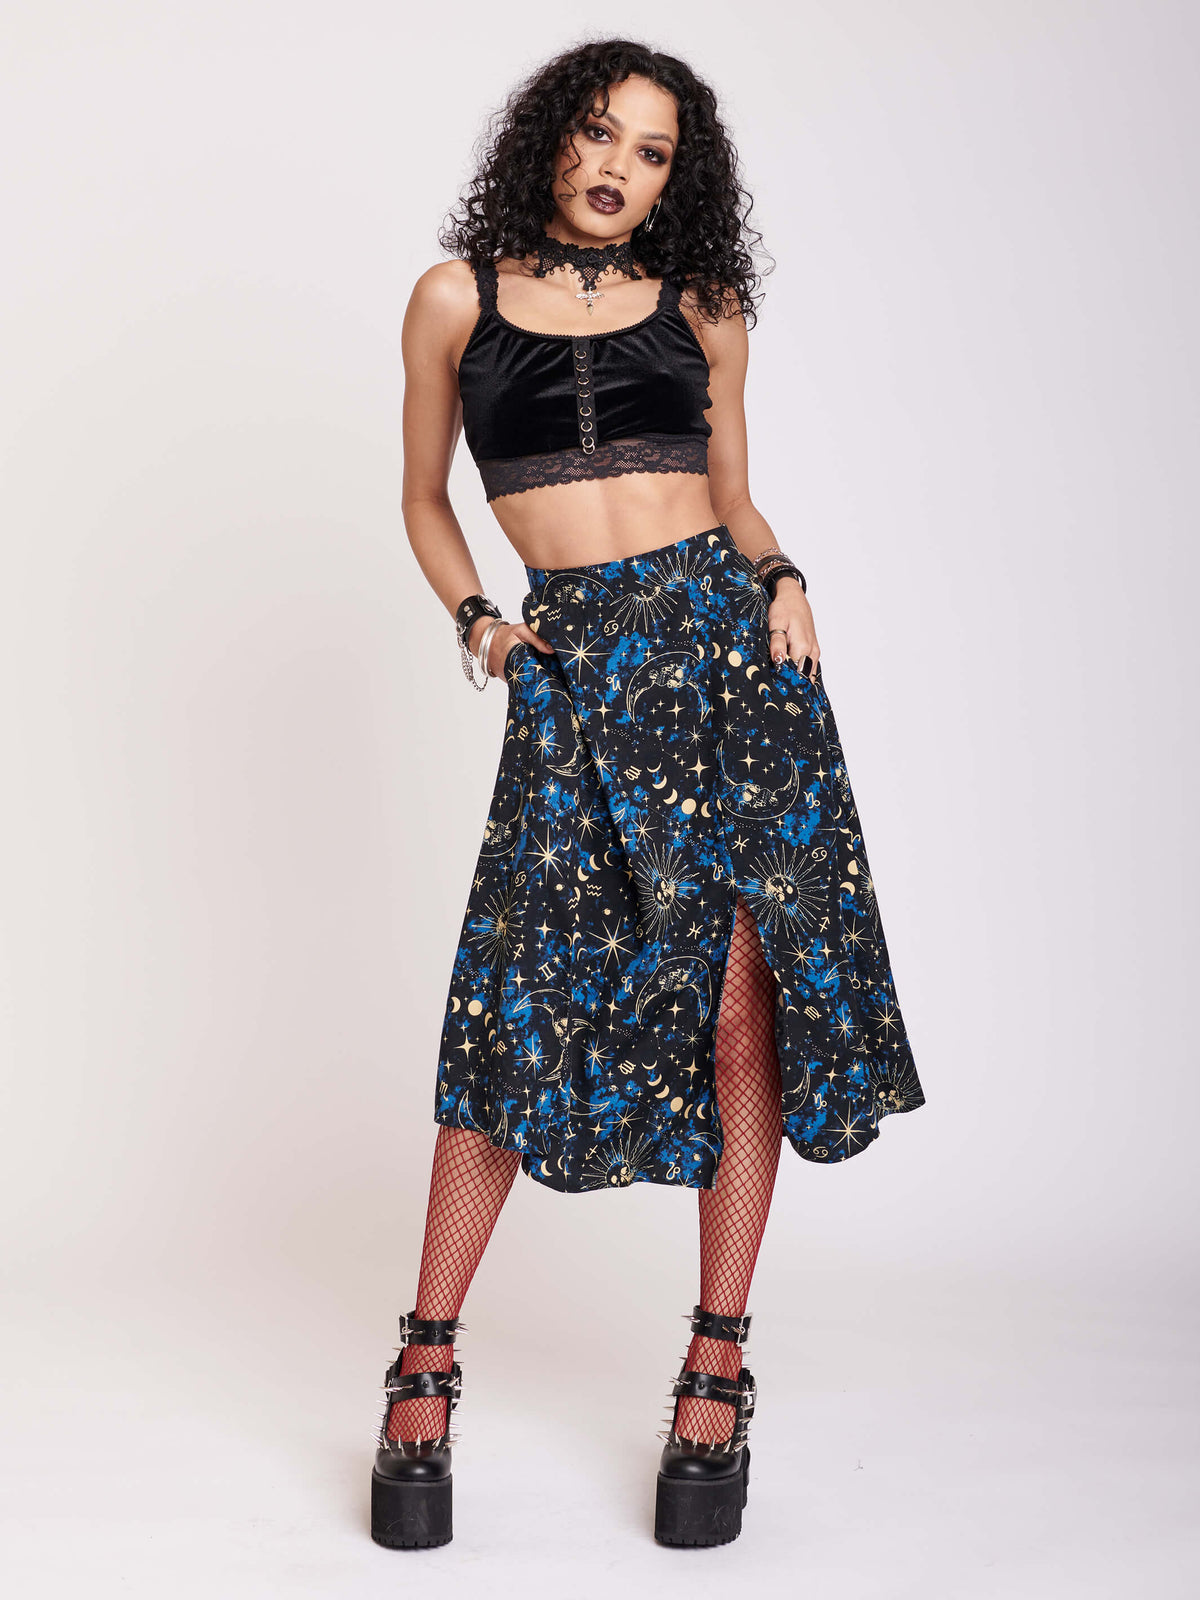 split midi skirt with blue, black and white celestail print